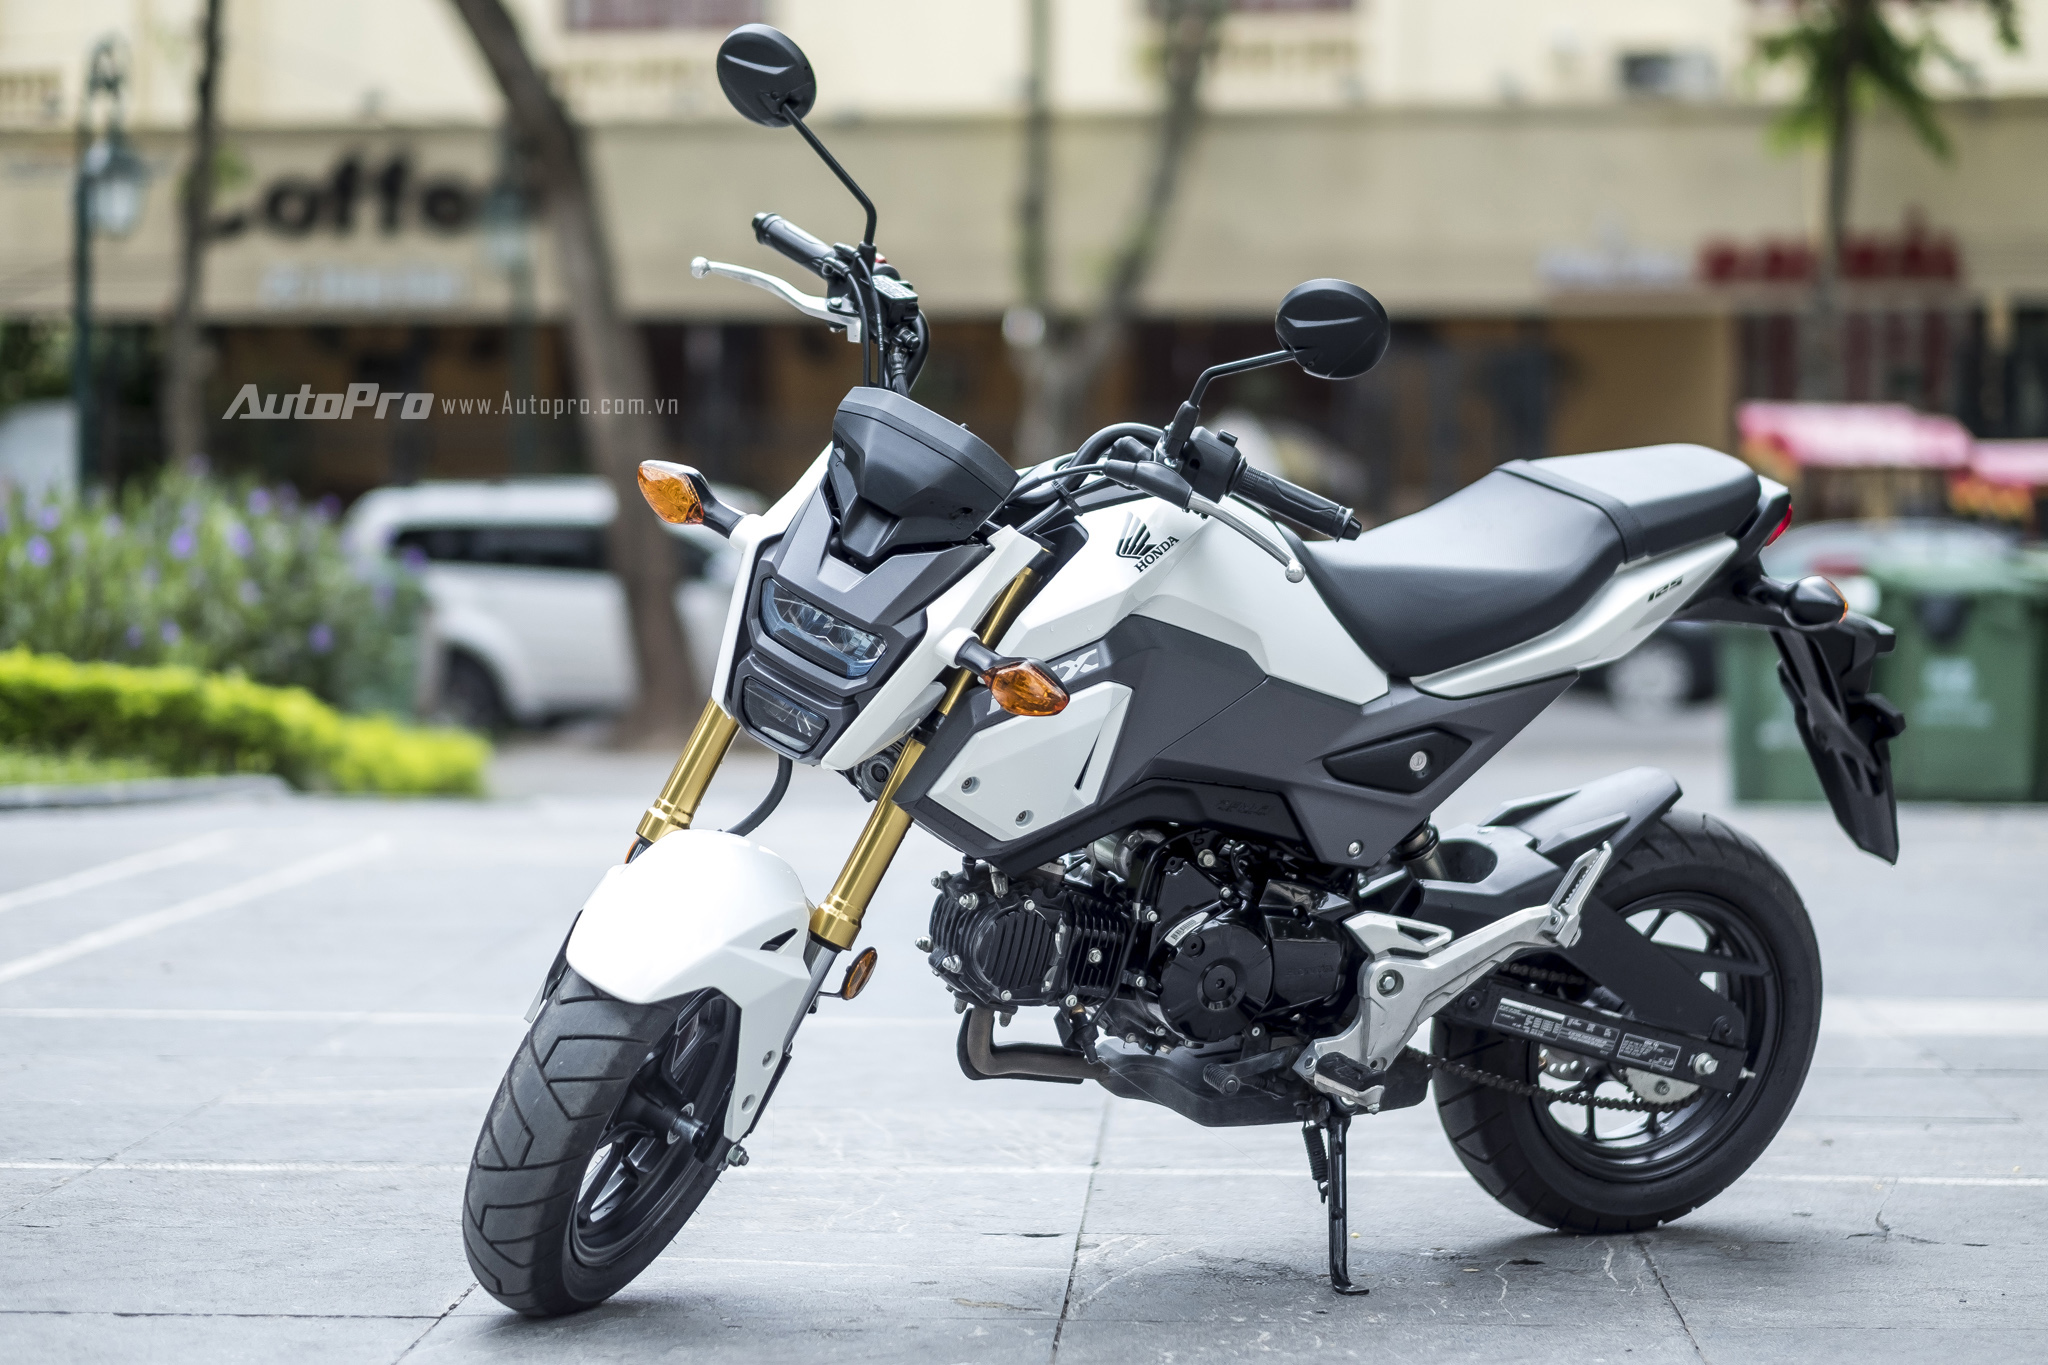 Cập nhật giá xe Honda MSX mới nhất tại Hà Nội và TPHCM